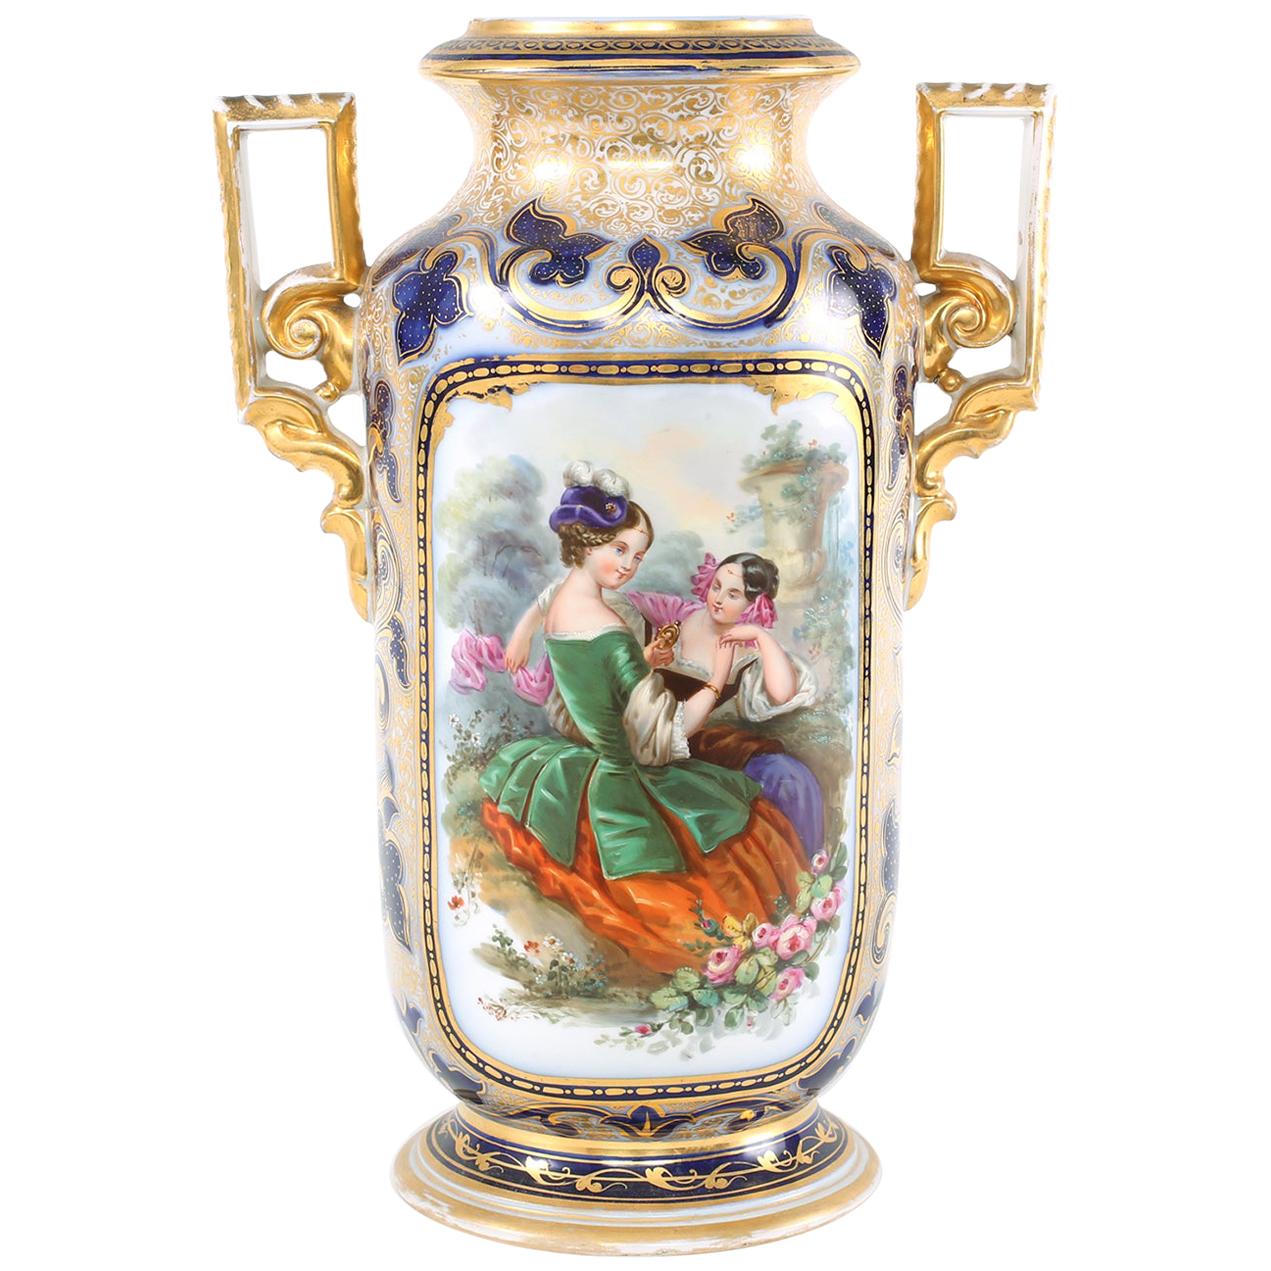  French Porcelain Decorative Vase  / Side Handles